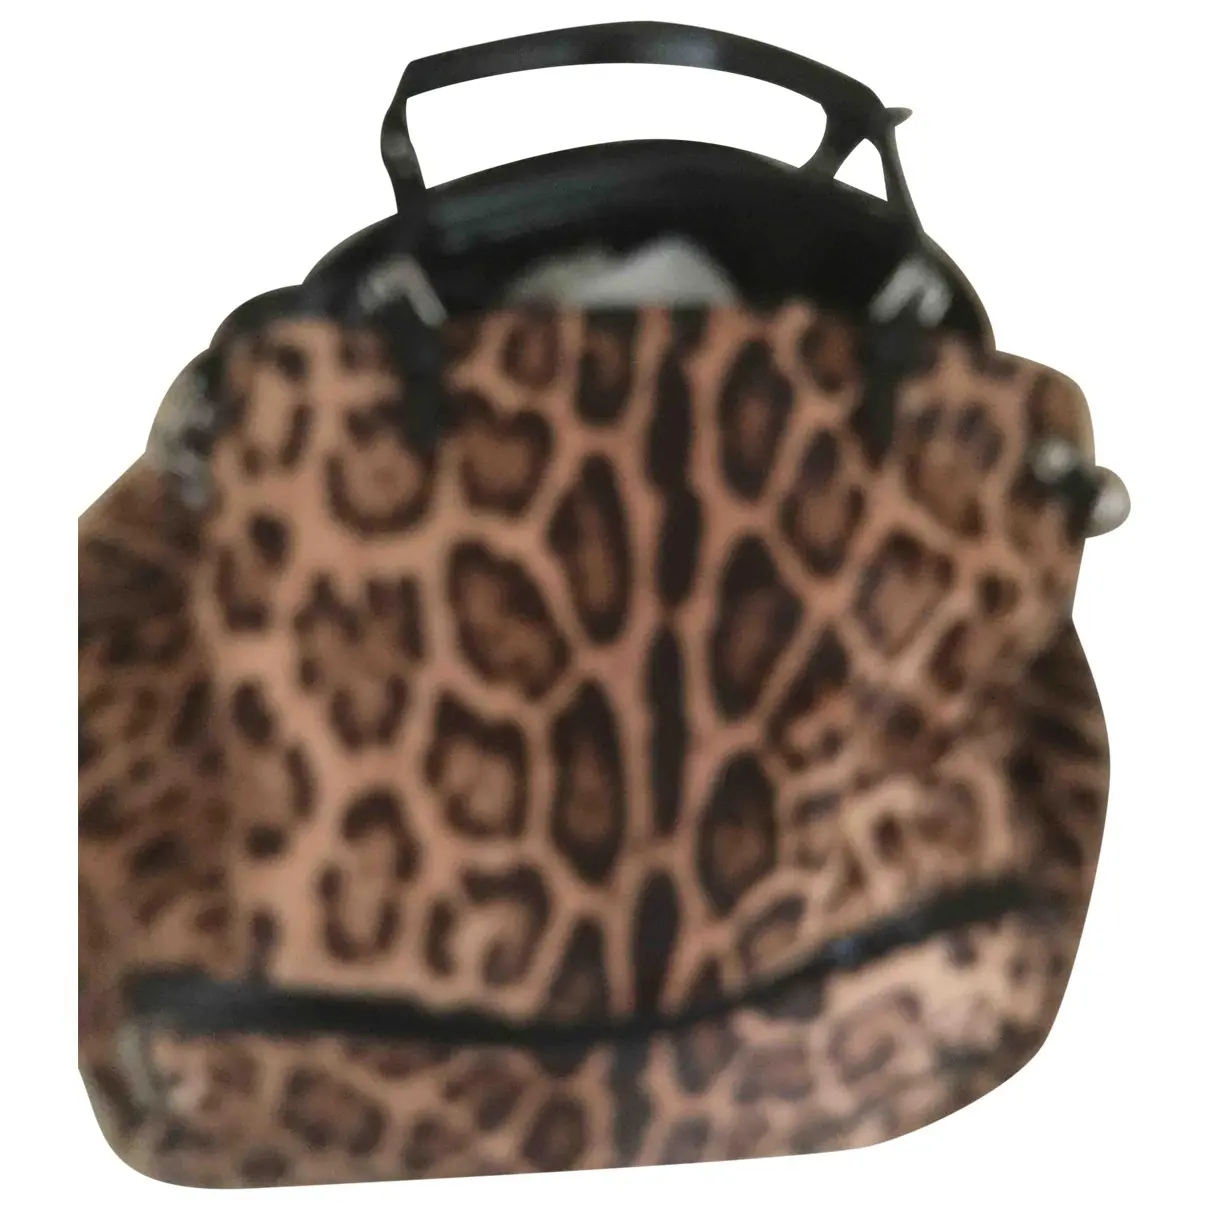 Dolce & Gabbana Pony-style calfskin handbag for sale